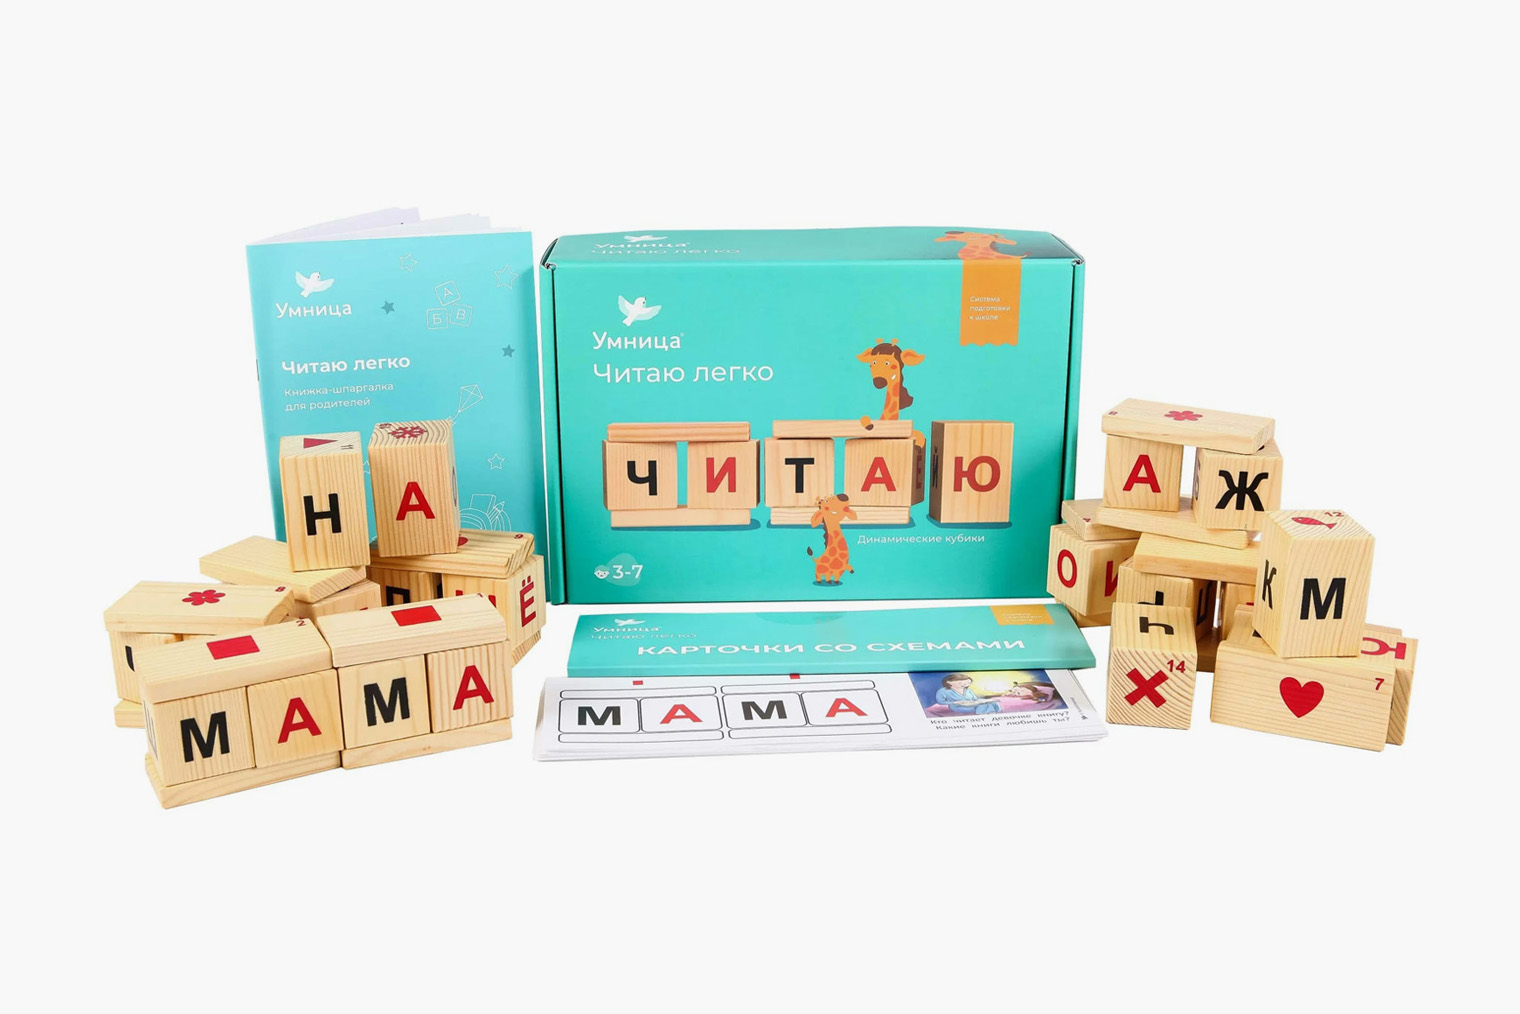 Помимо кубиков в комплект входят карточки со схемами и руководство для родителей. Источник: market.yandex.ru